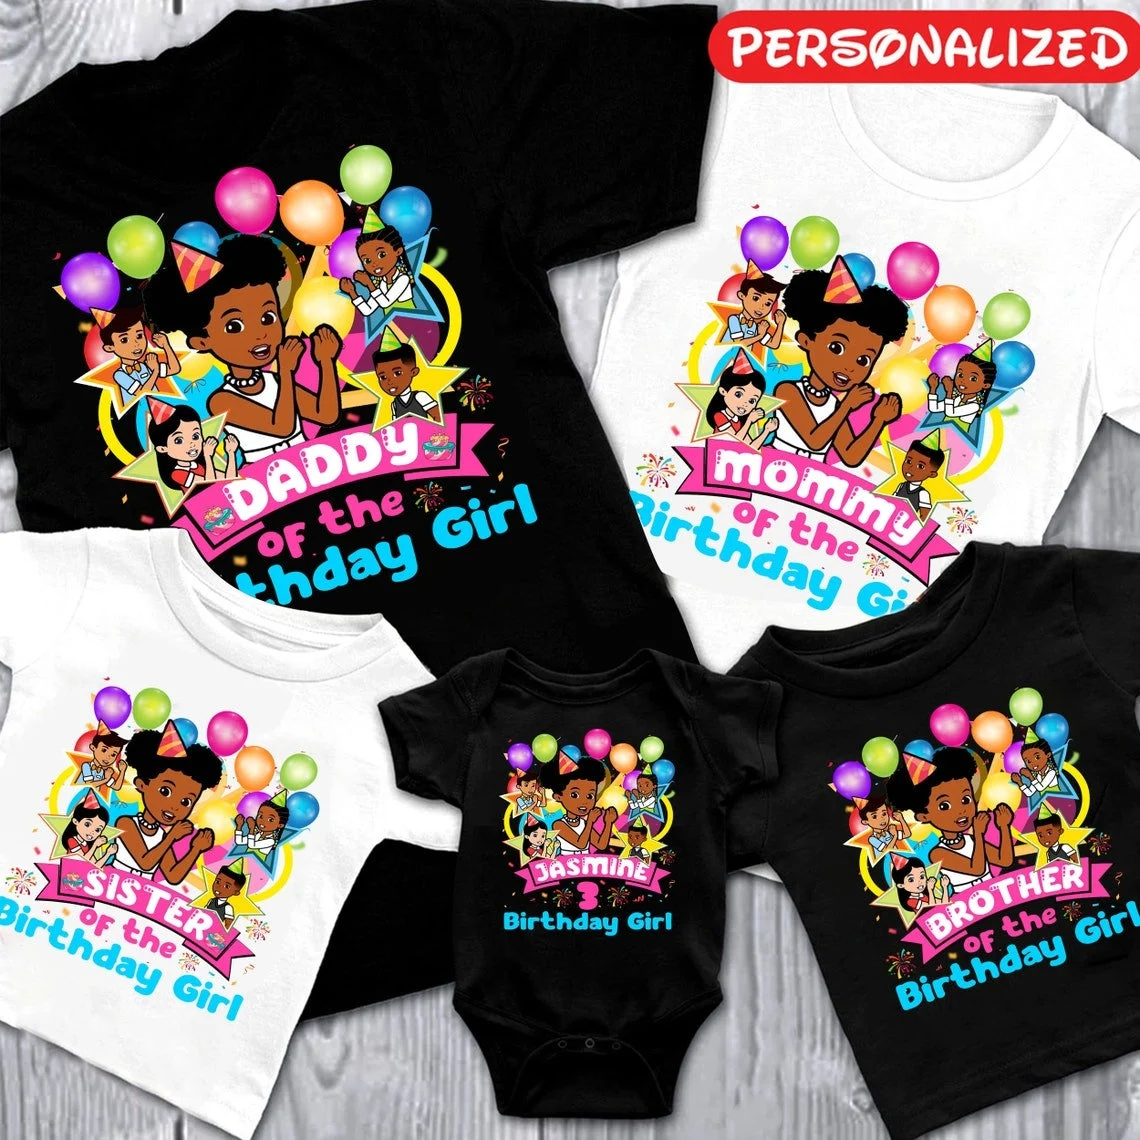 Personalized Gracies Corner Shirt, Birthday Girl Shirt, Gracies Corner Birthday Shirt, Gracies Corner Shirt, Gracies Song shirt